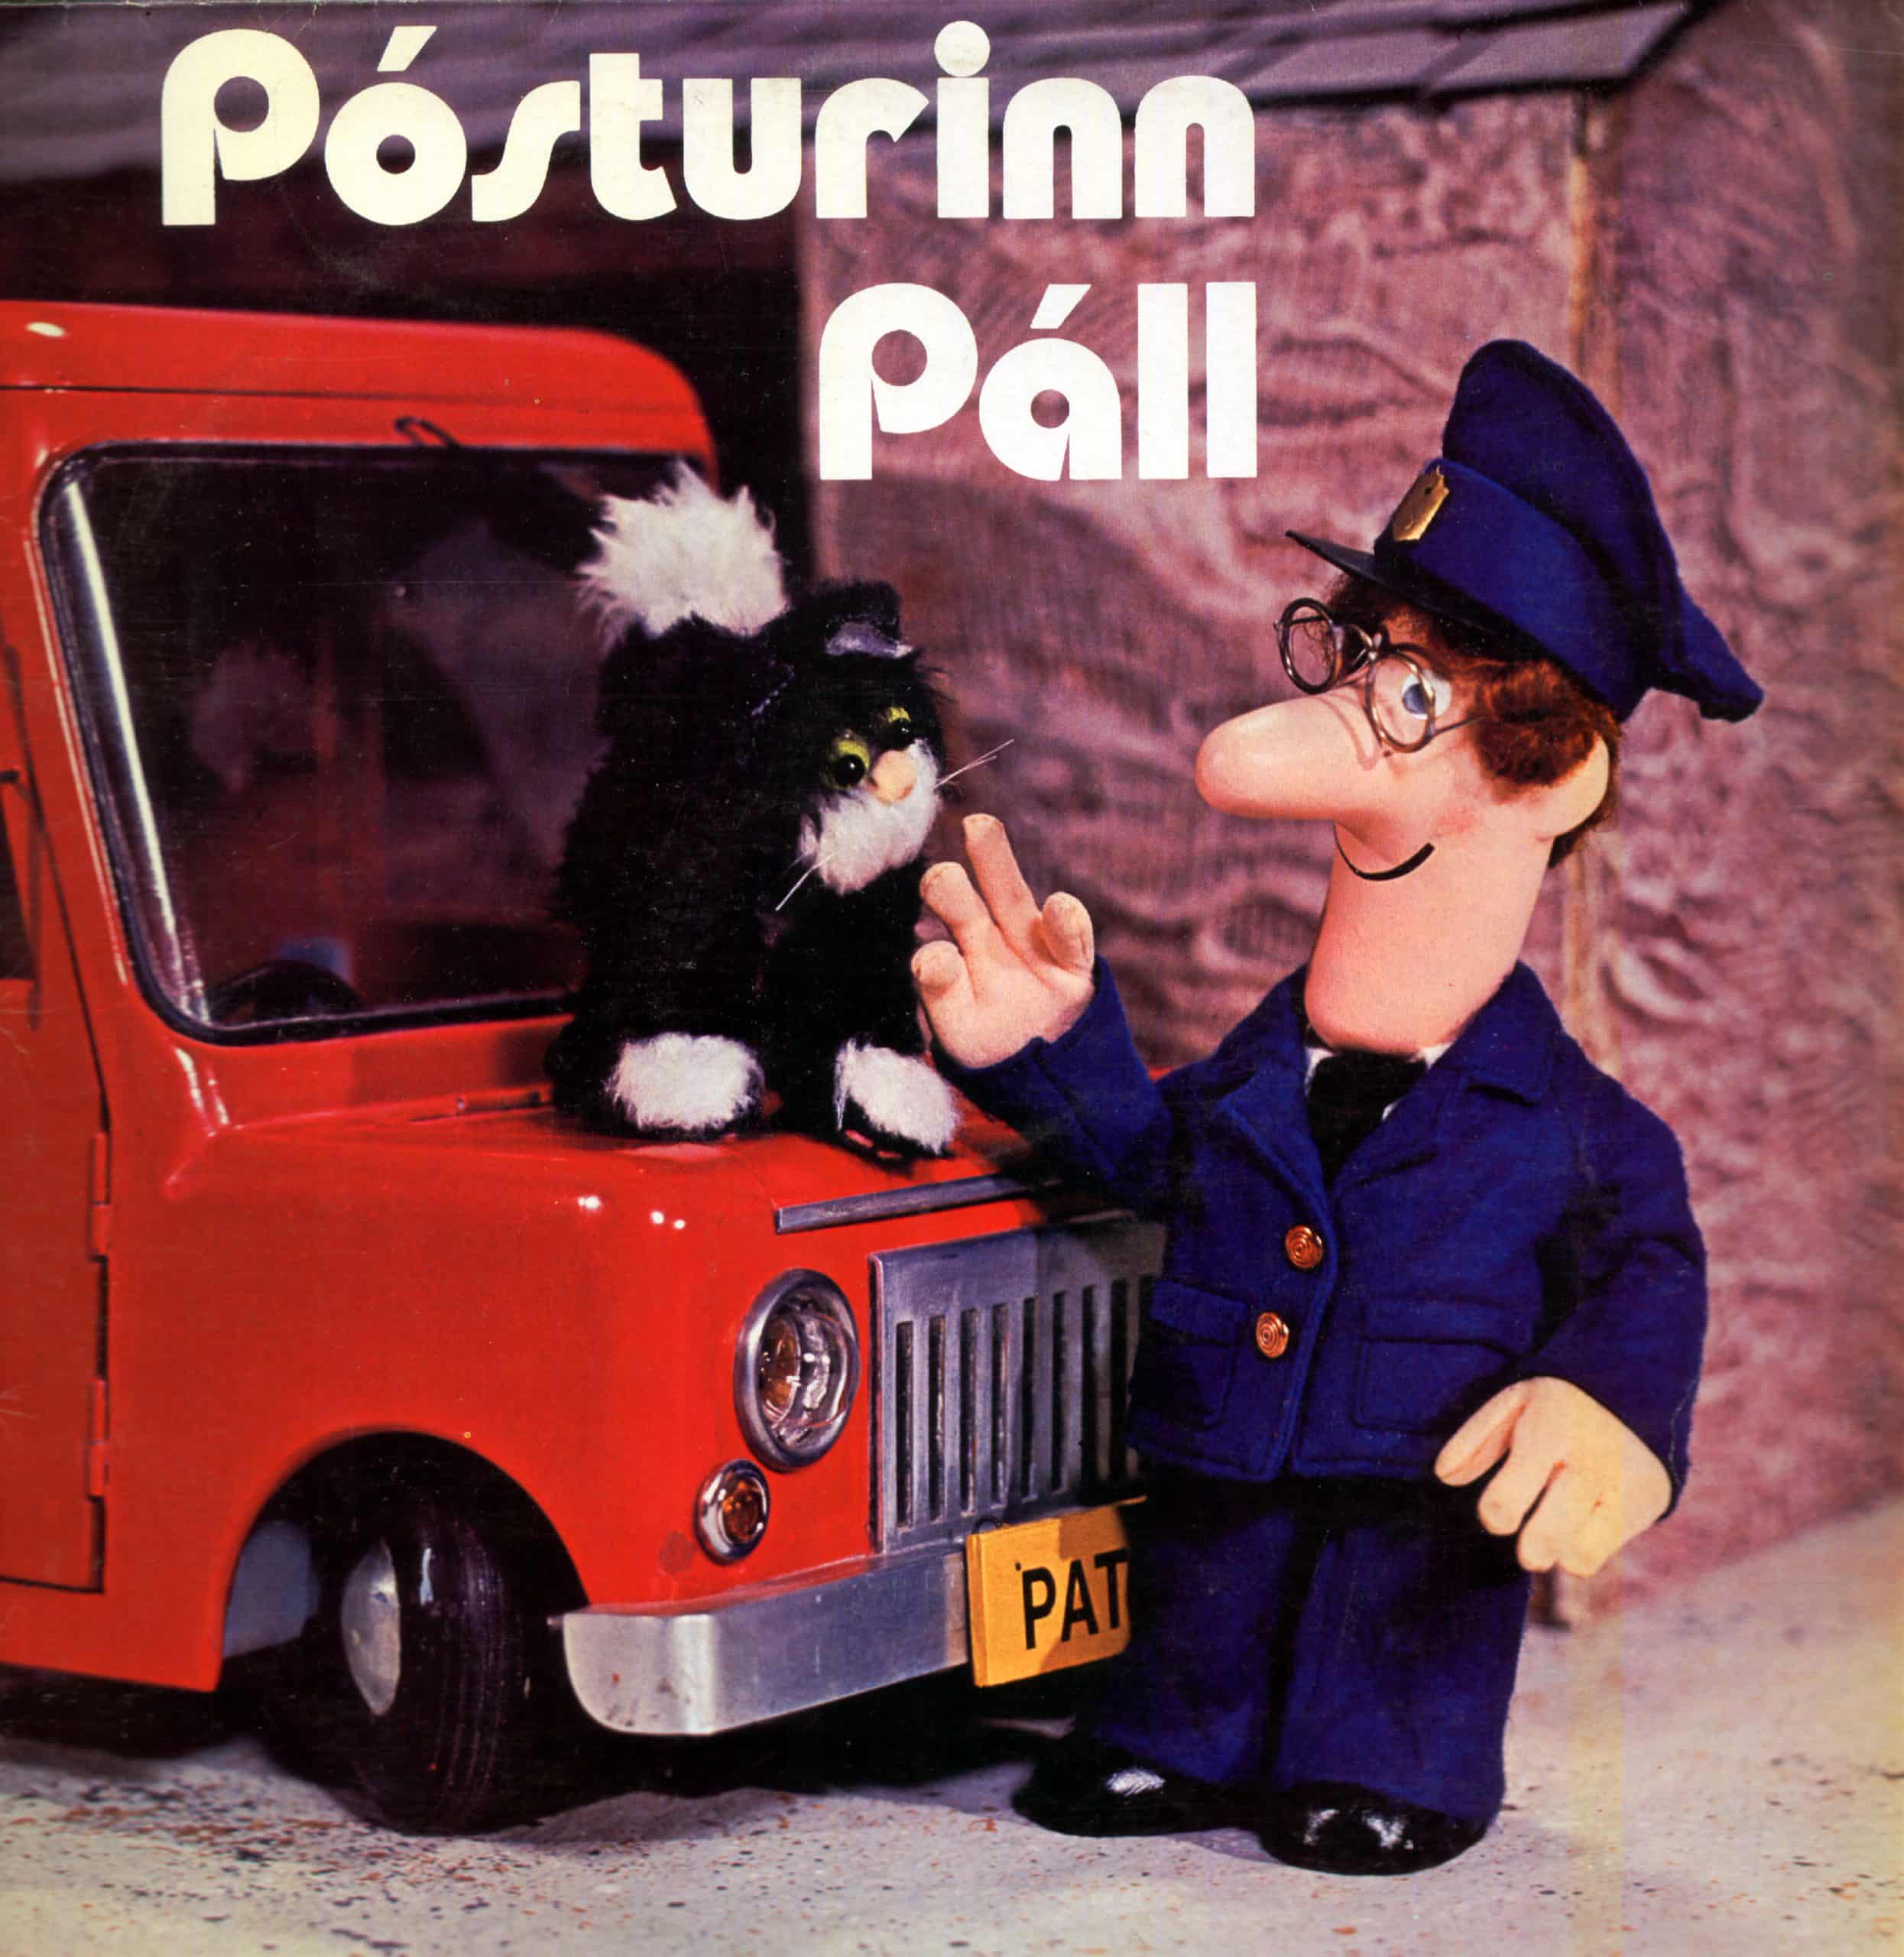 posturinn-pall-1984